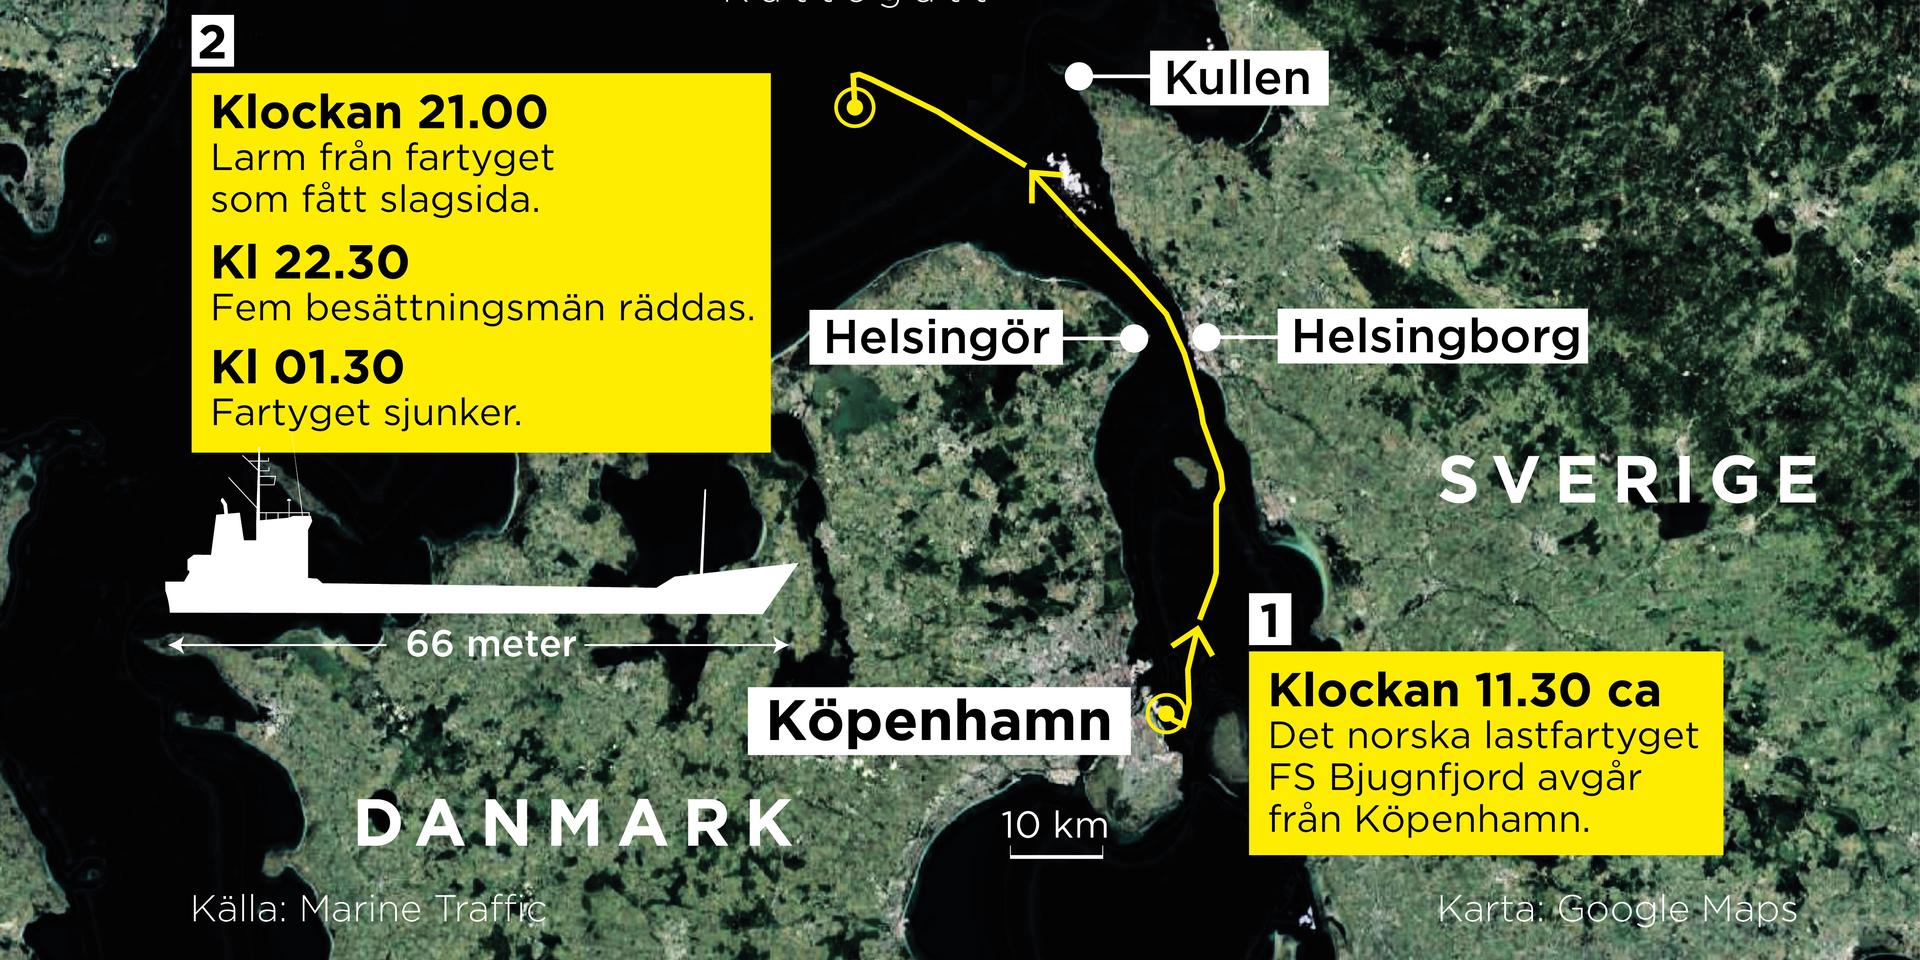 Ett norskt lastfartyg fick slagsida under torsdagskvällen och fem besättningsmän fick räddas via en helikopter. Under natten sjönk fartyget till botten.